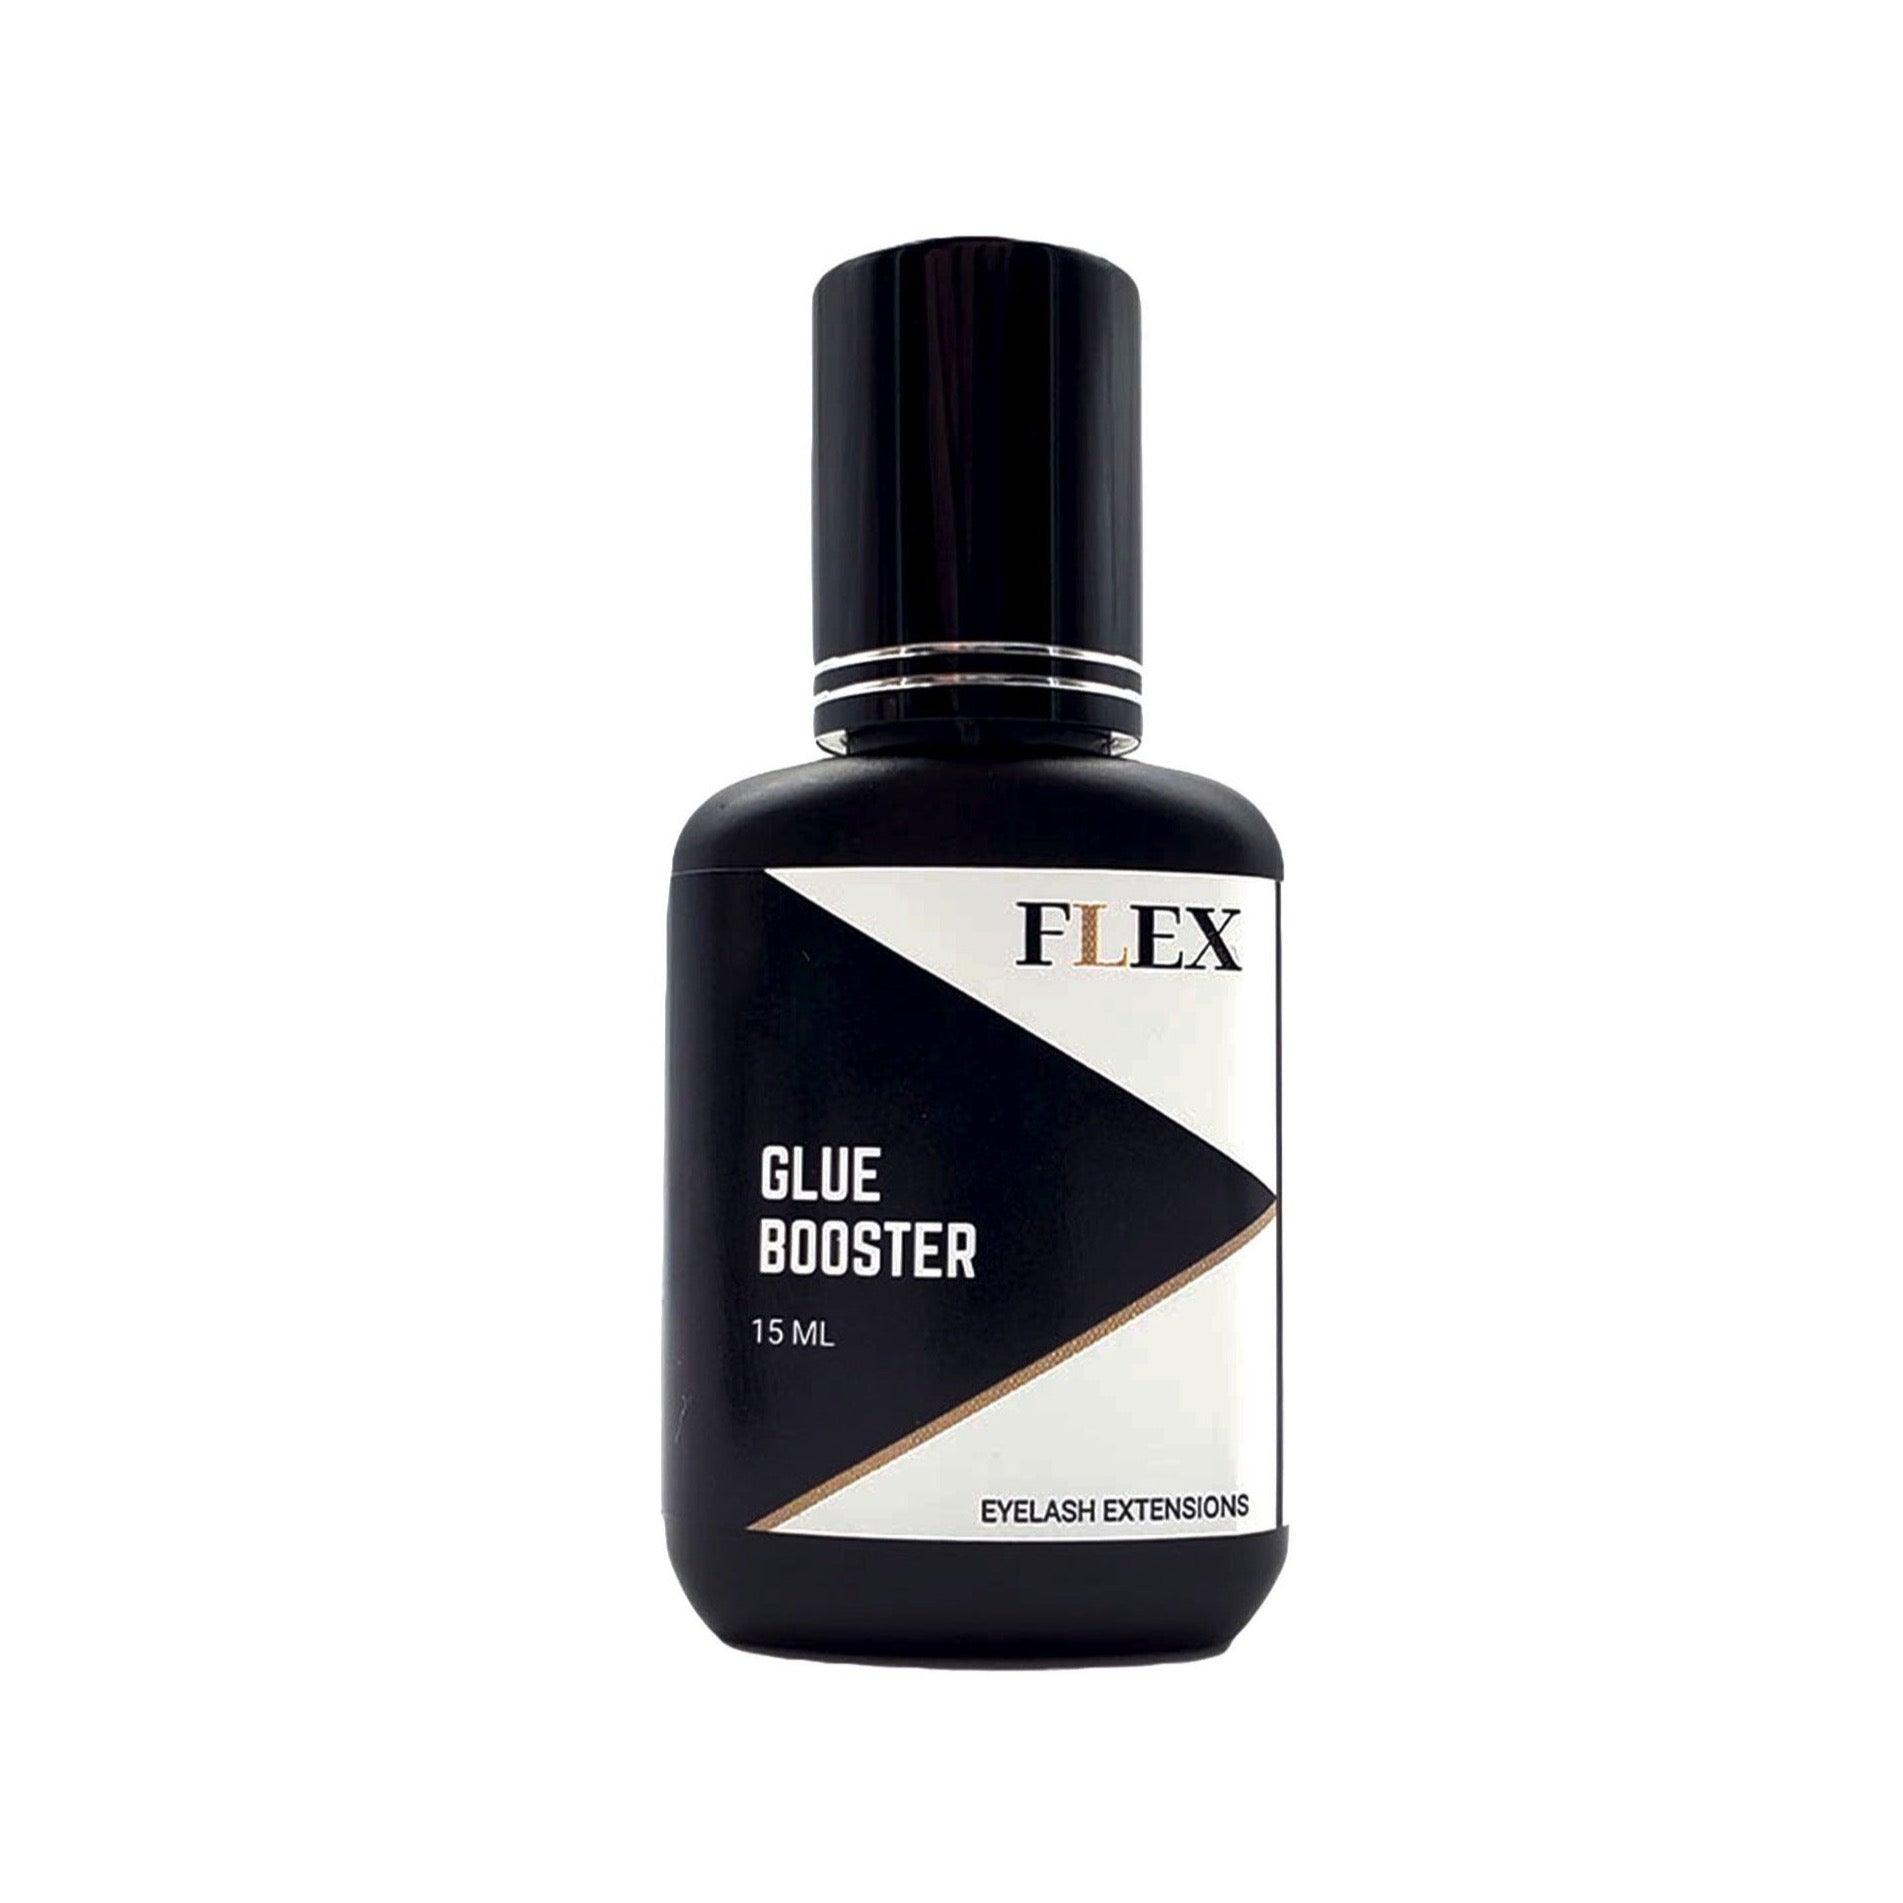 FLEX Beauty Glue Booster